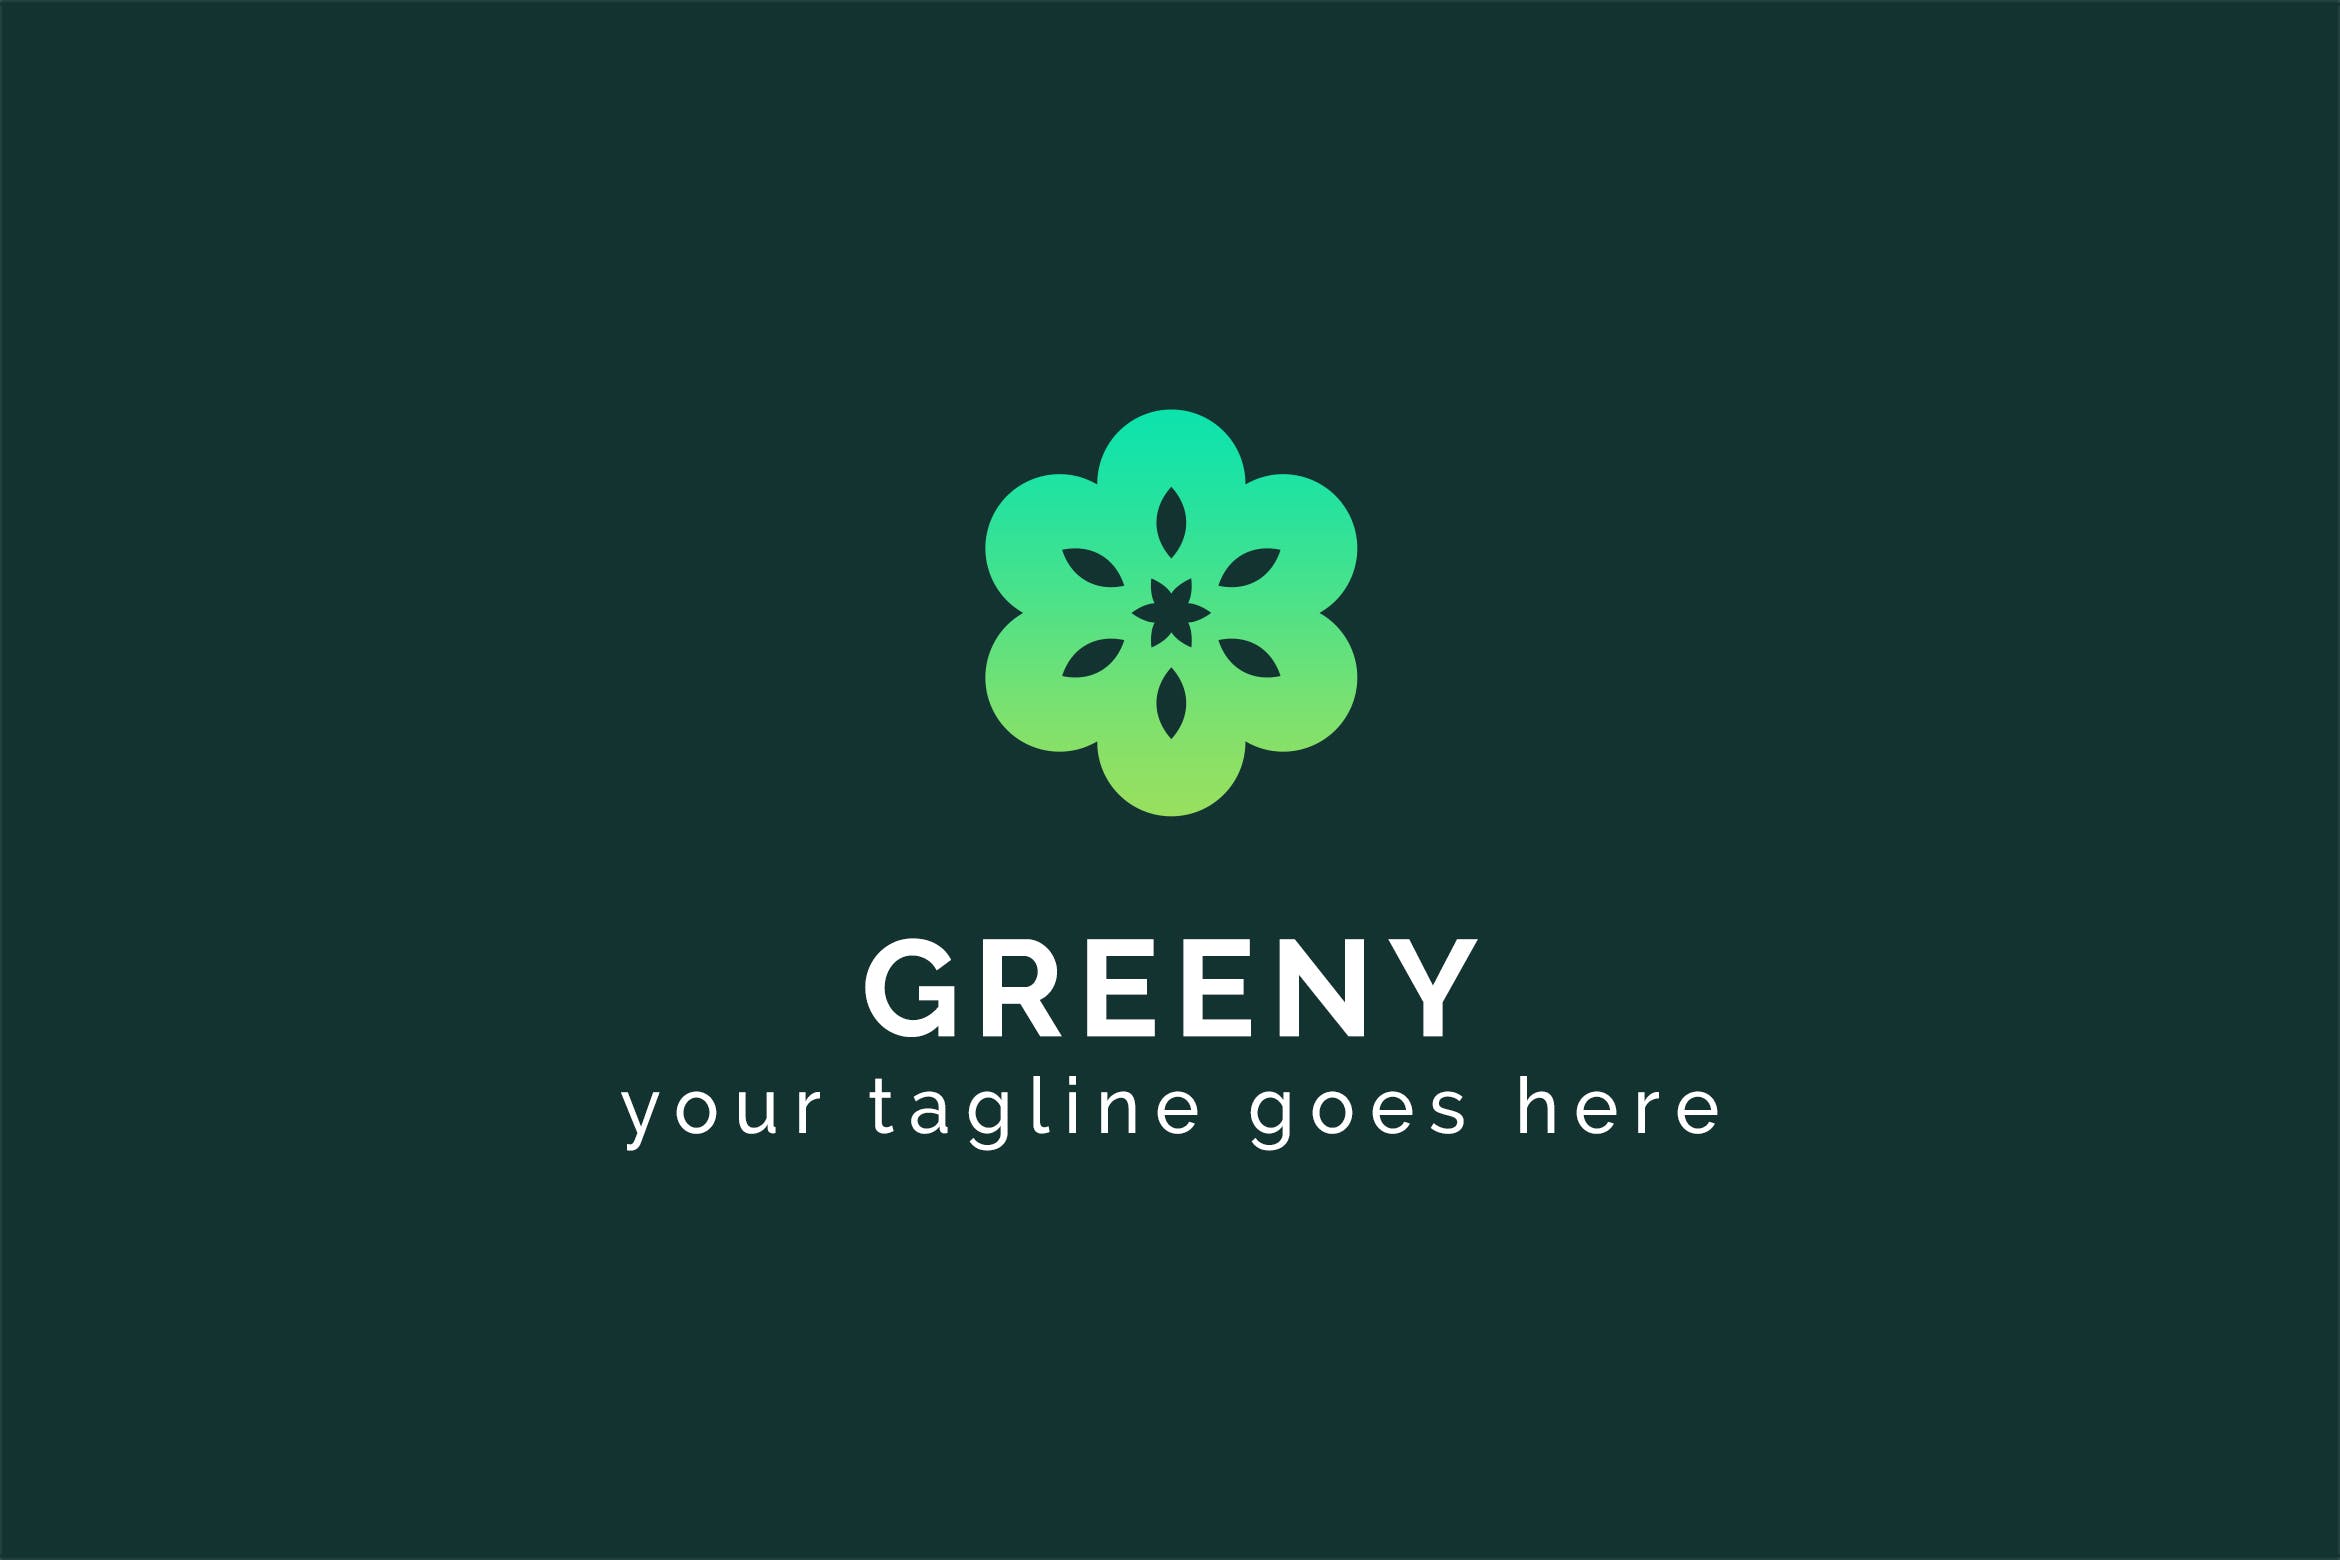 六瓣剪纸花卉图形Logo设计第一素材精选模板 Greeny – Multipurpose Logo Template插图